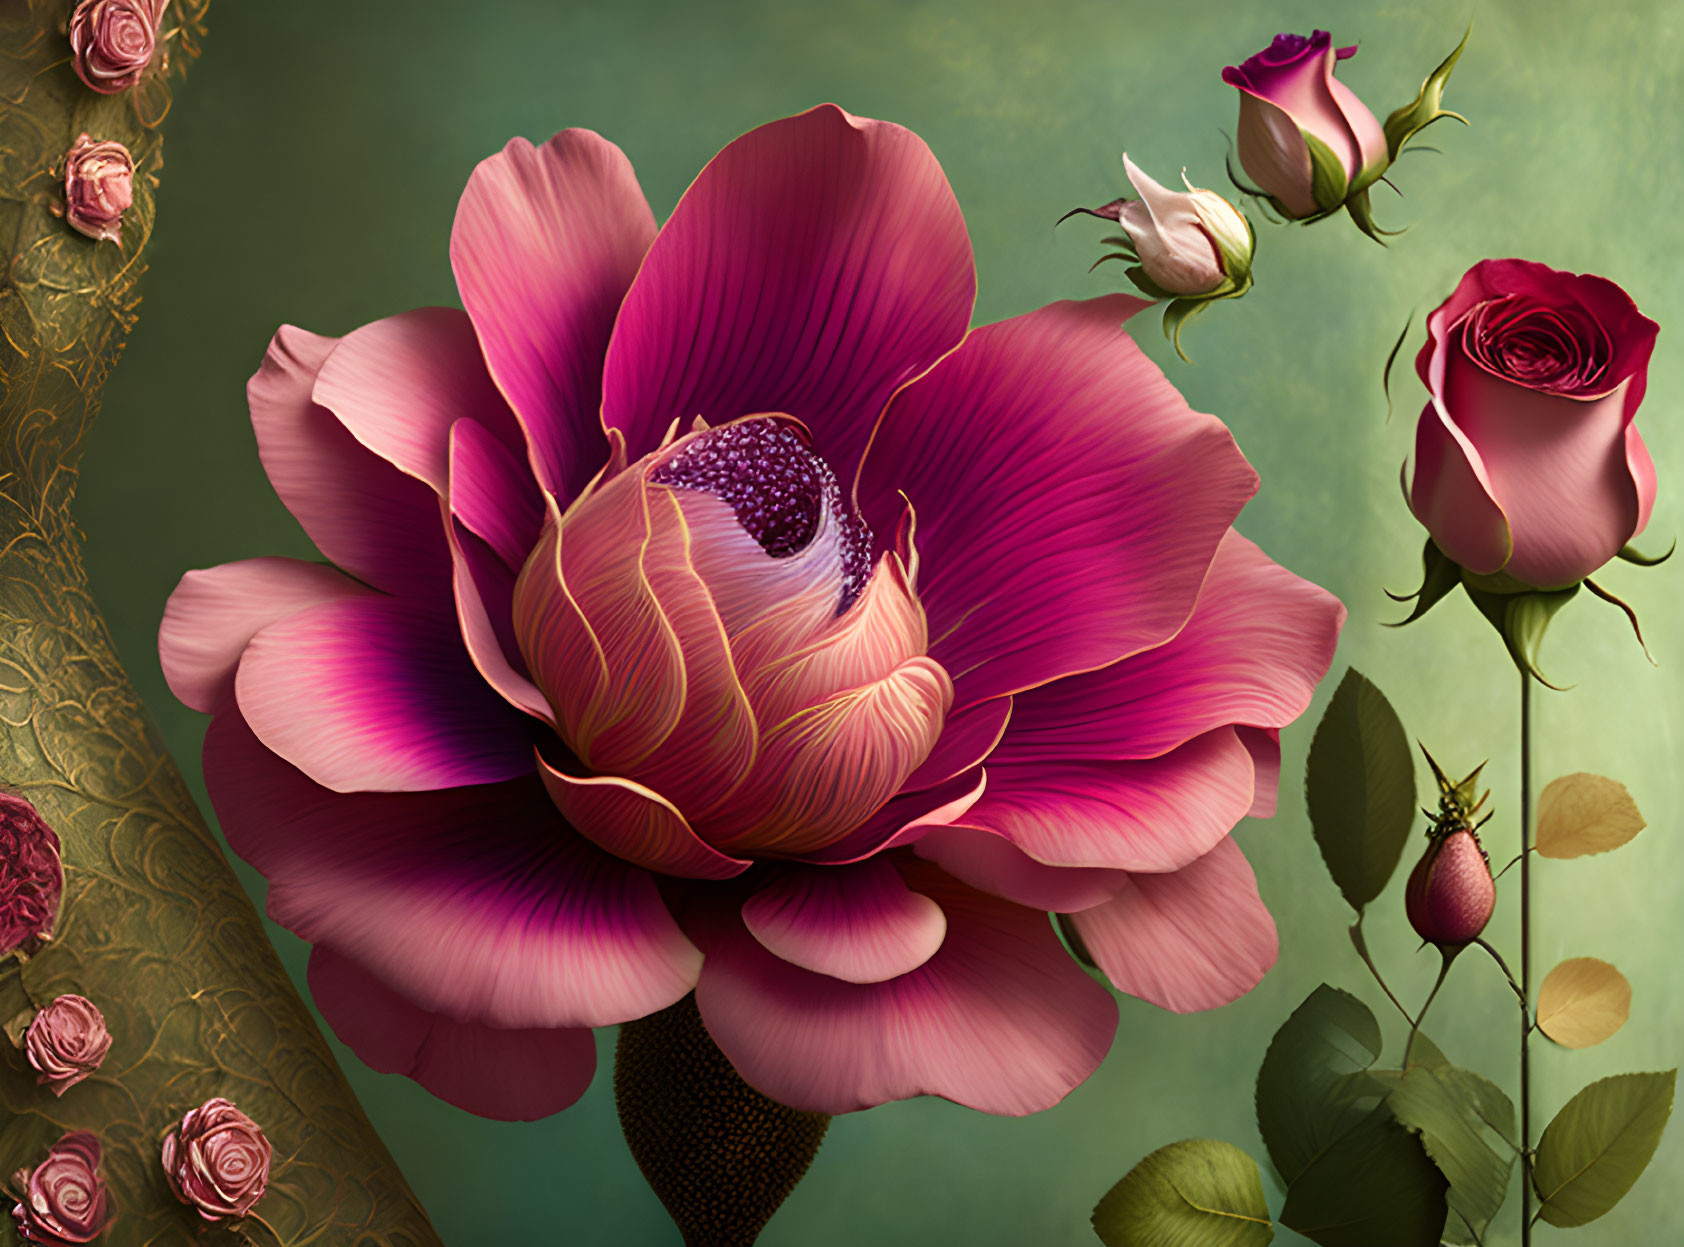 Pink flower digital artwork with vintage green background and golden border